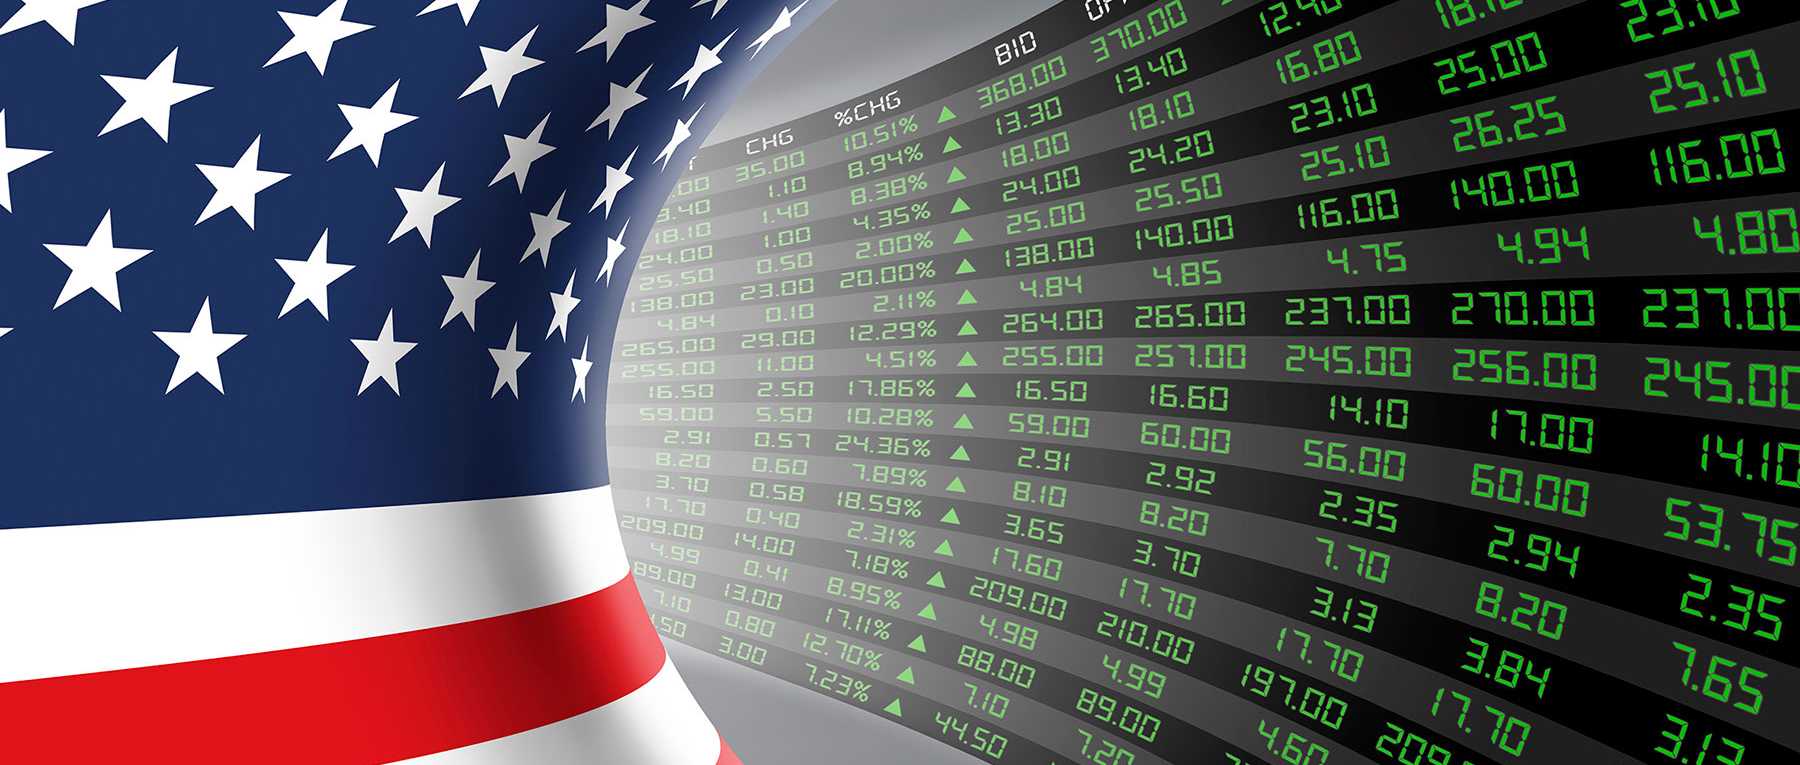 Enlarged view: Etats-Unis, bourse